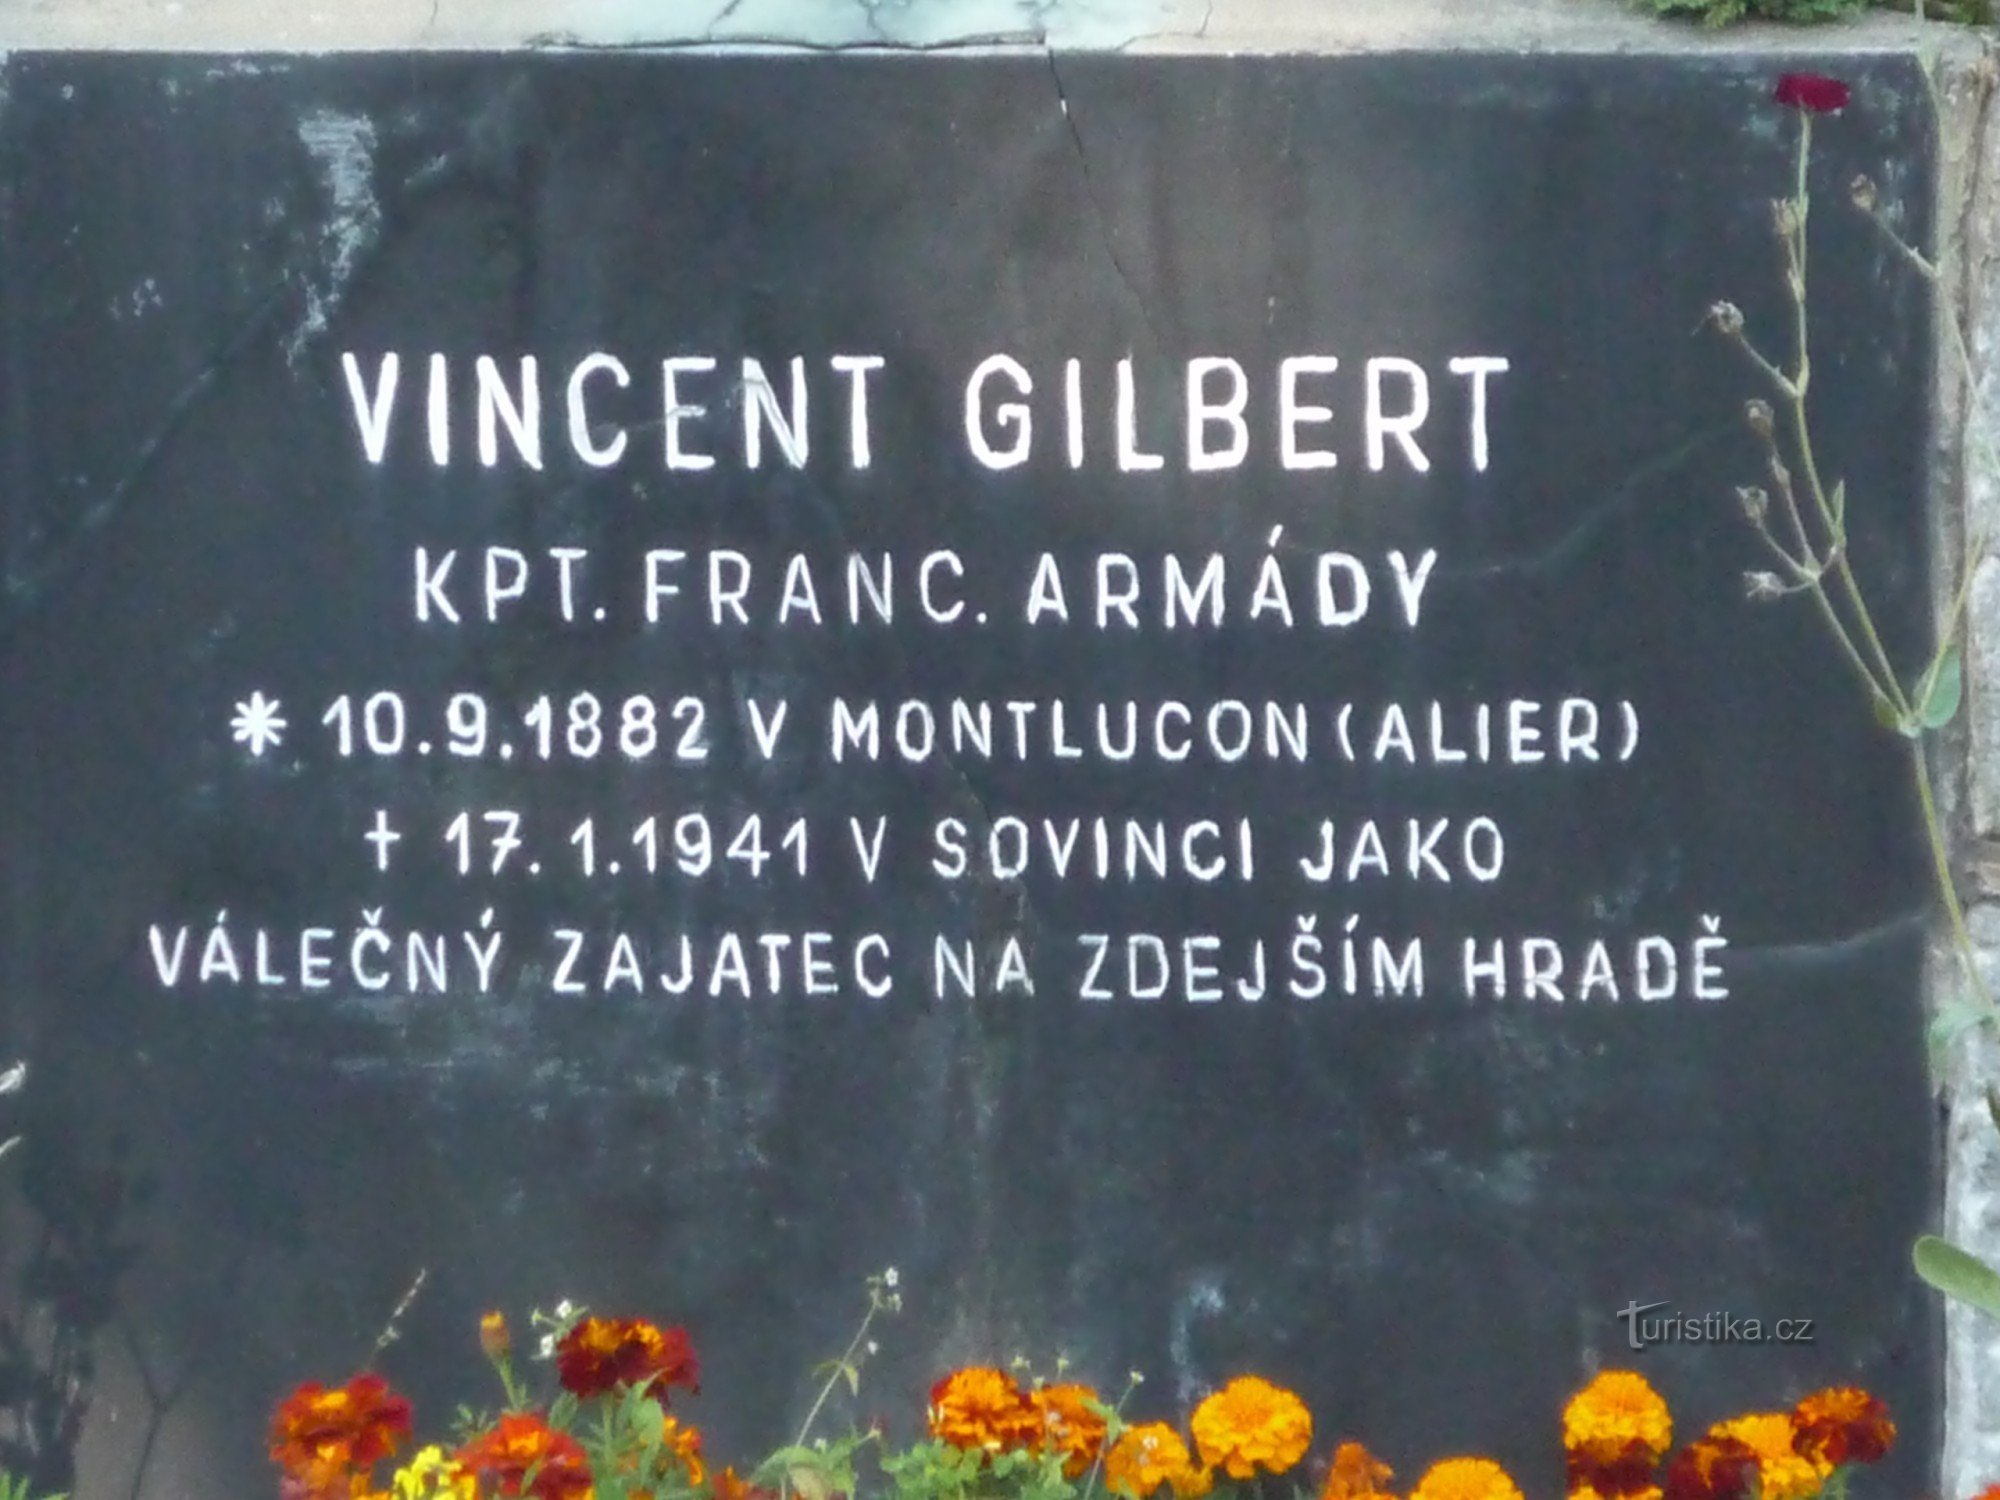 Vincenzo Gilbert